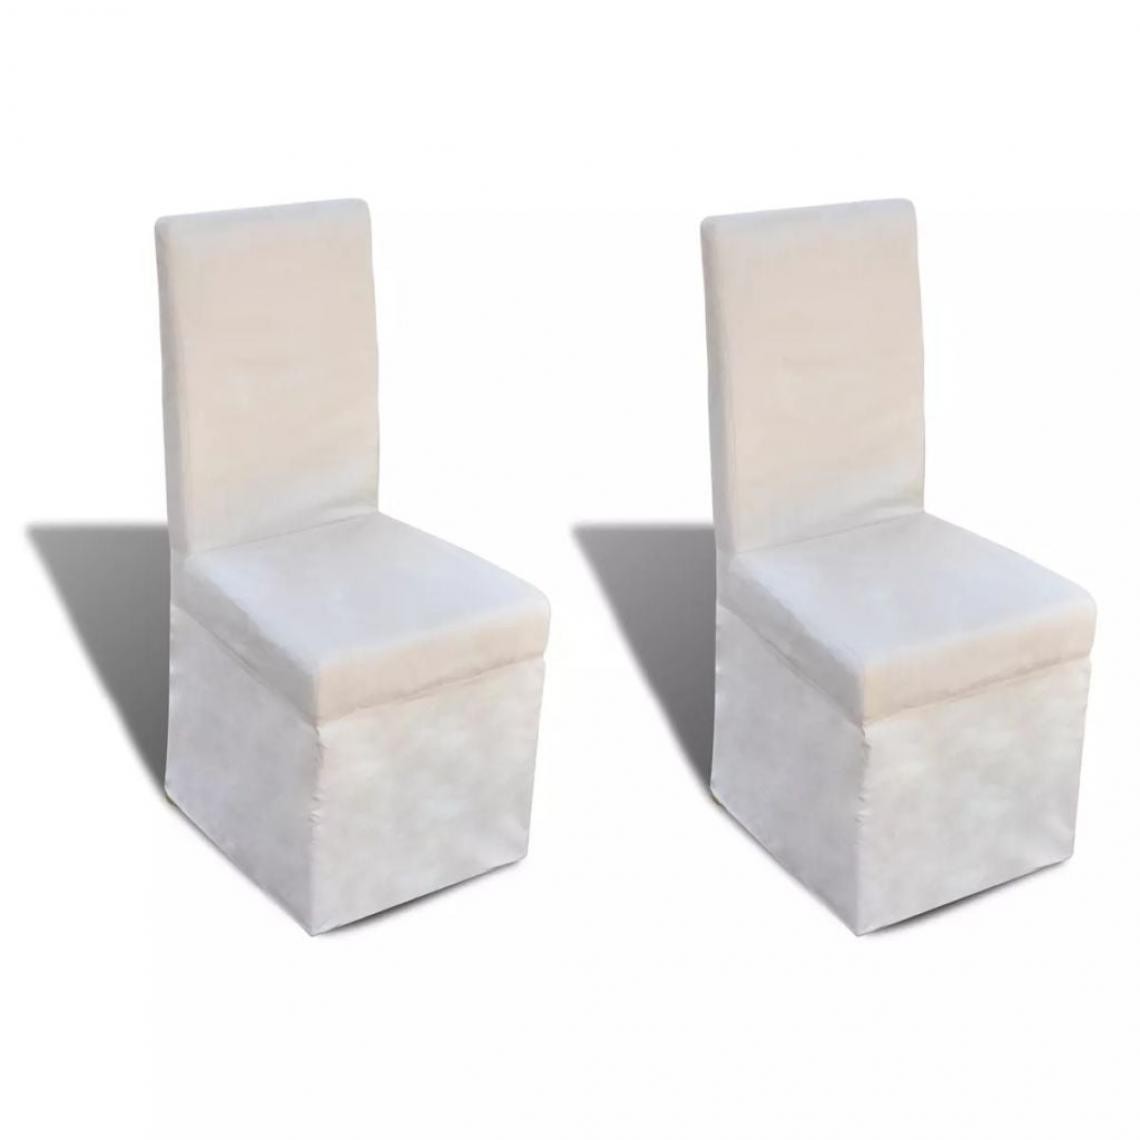 Decoshop26 - Lot de 2 chaises de salle à manger cuisine design classique tissu blanc crème CDS020168 - Chaises